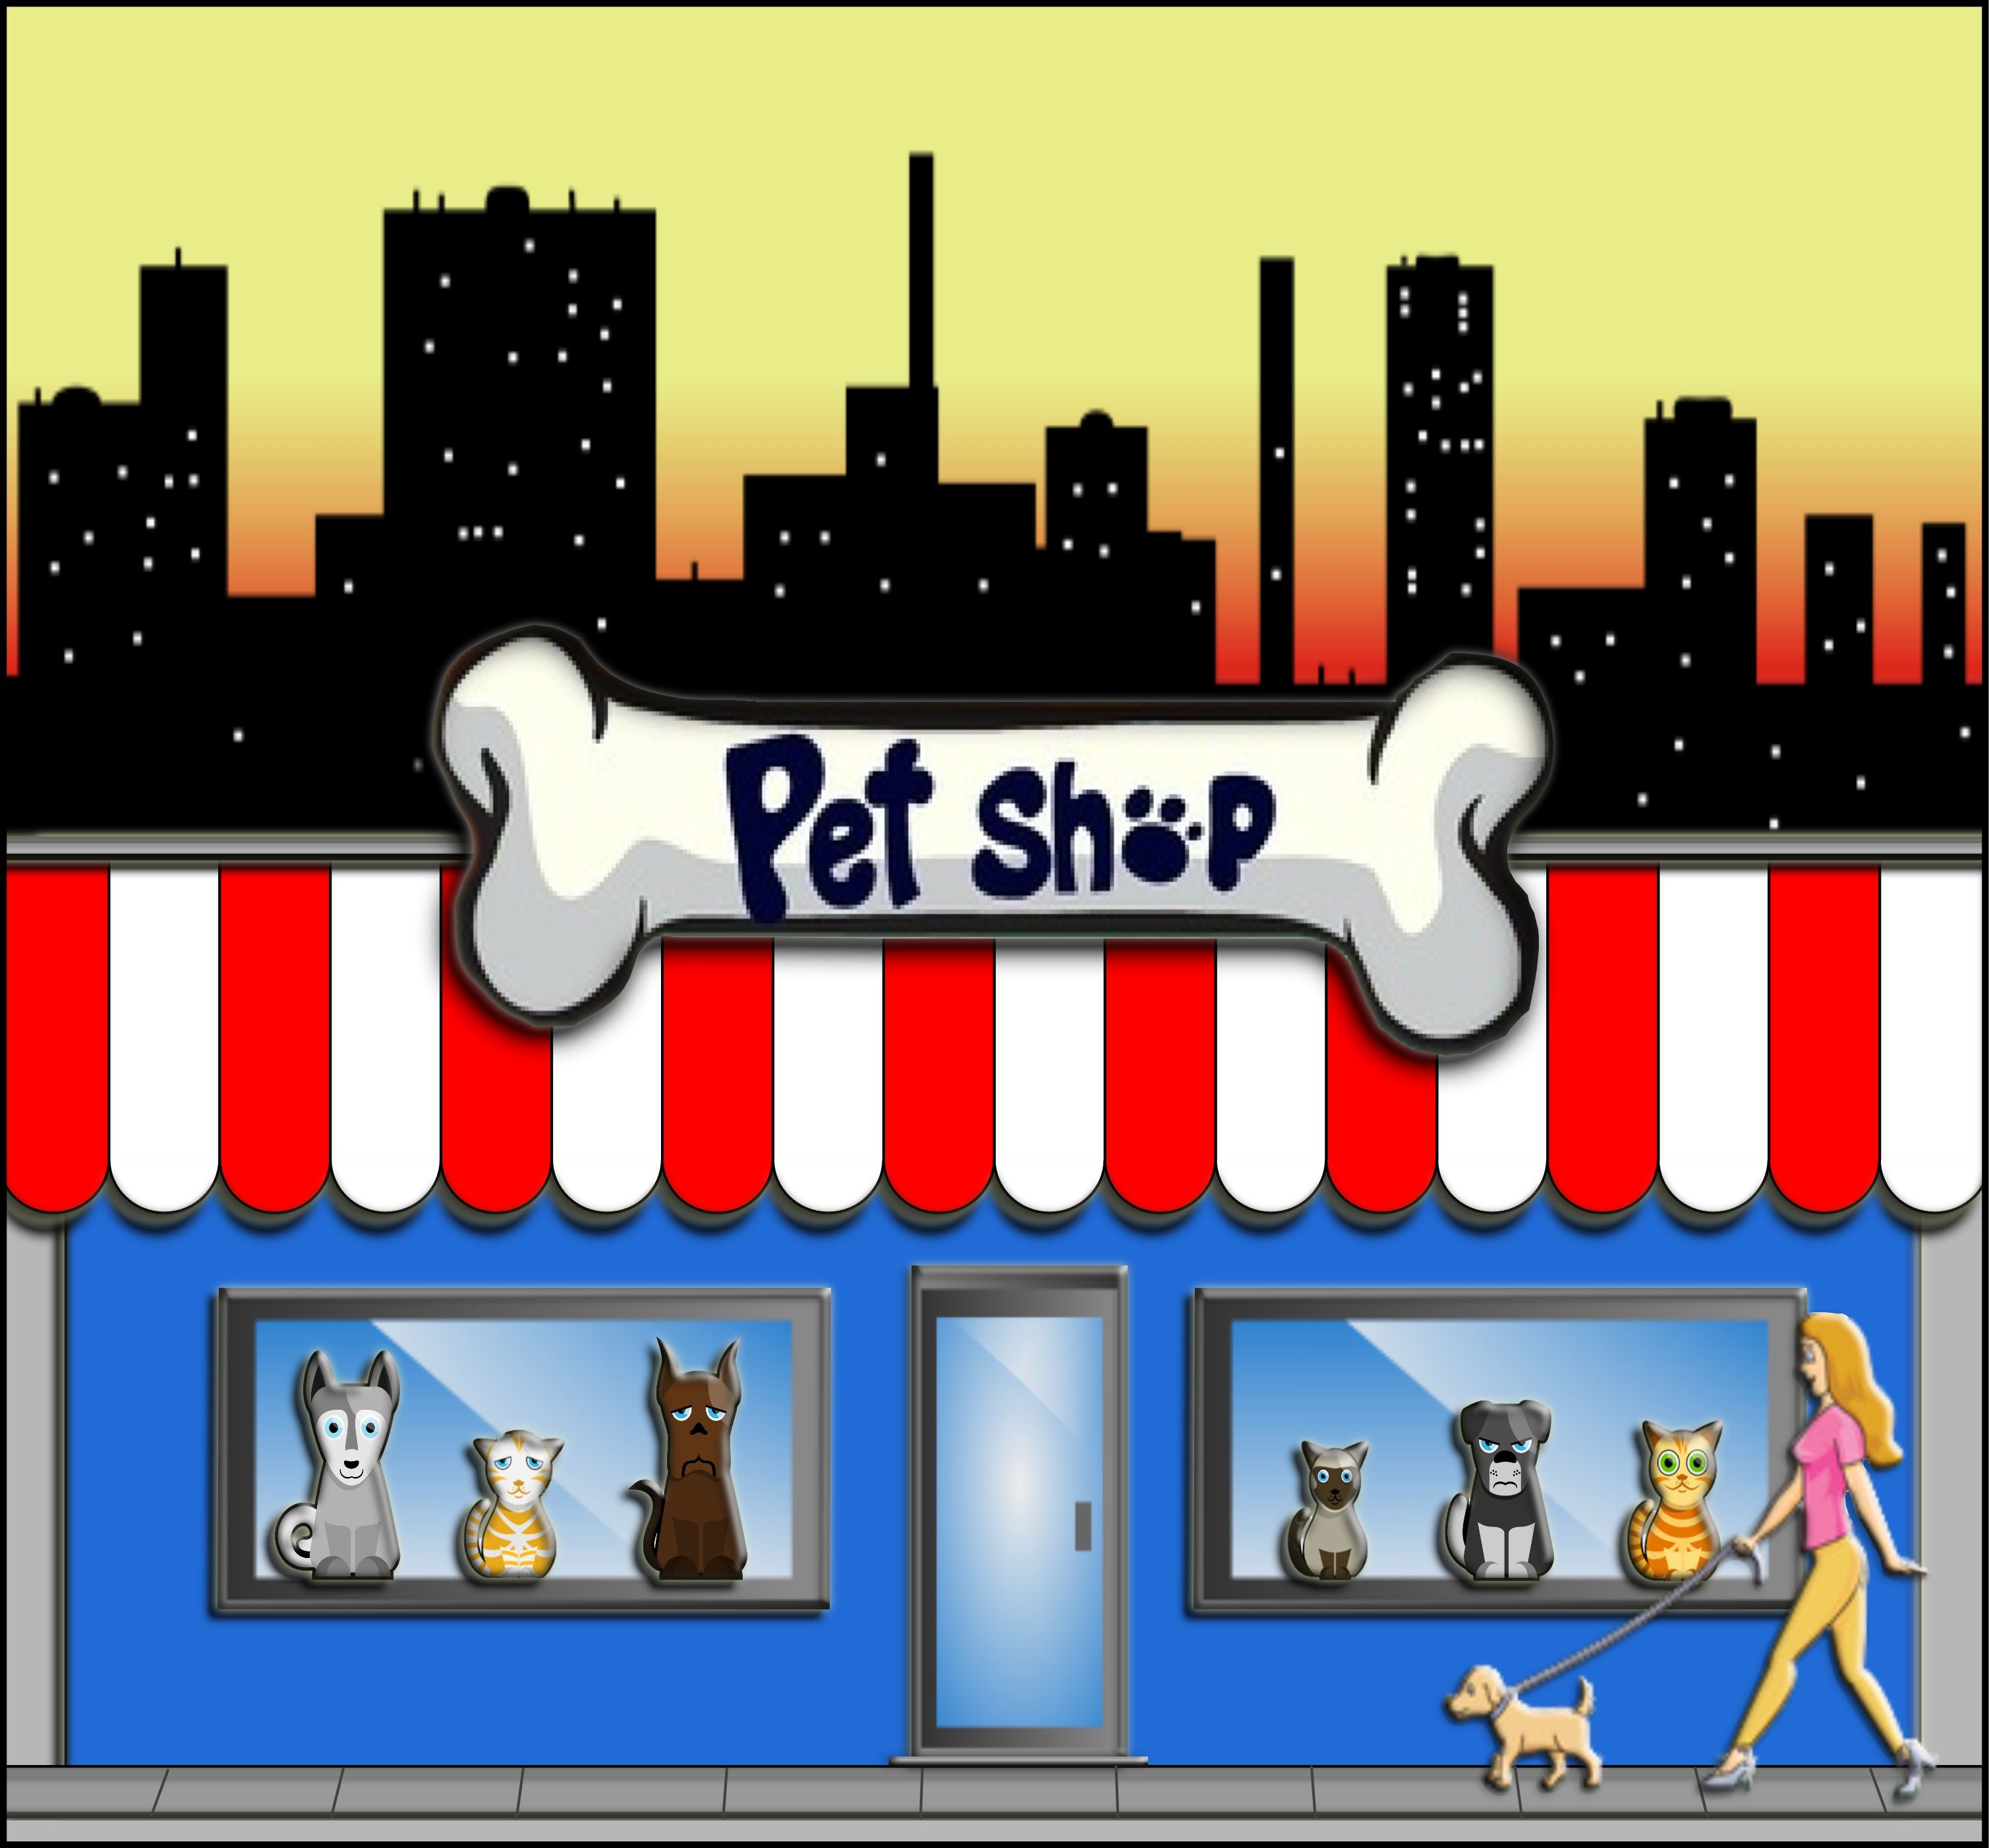 Pet Shop